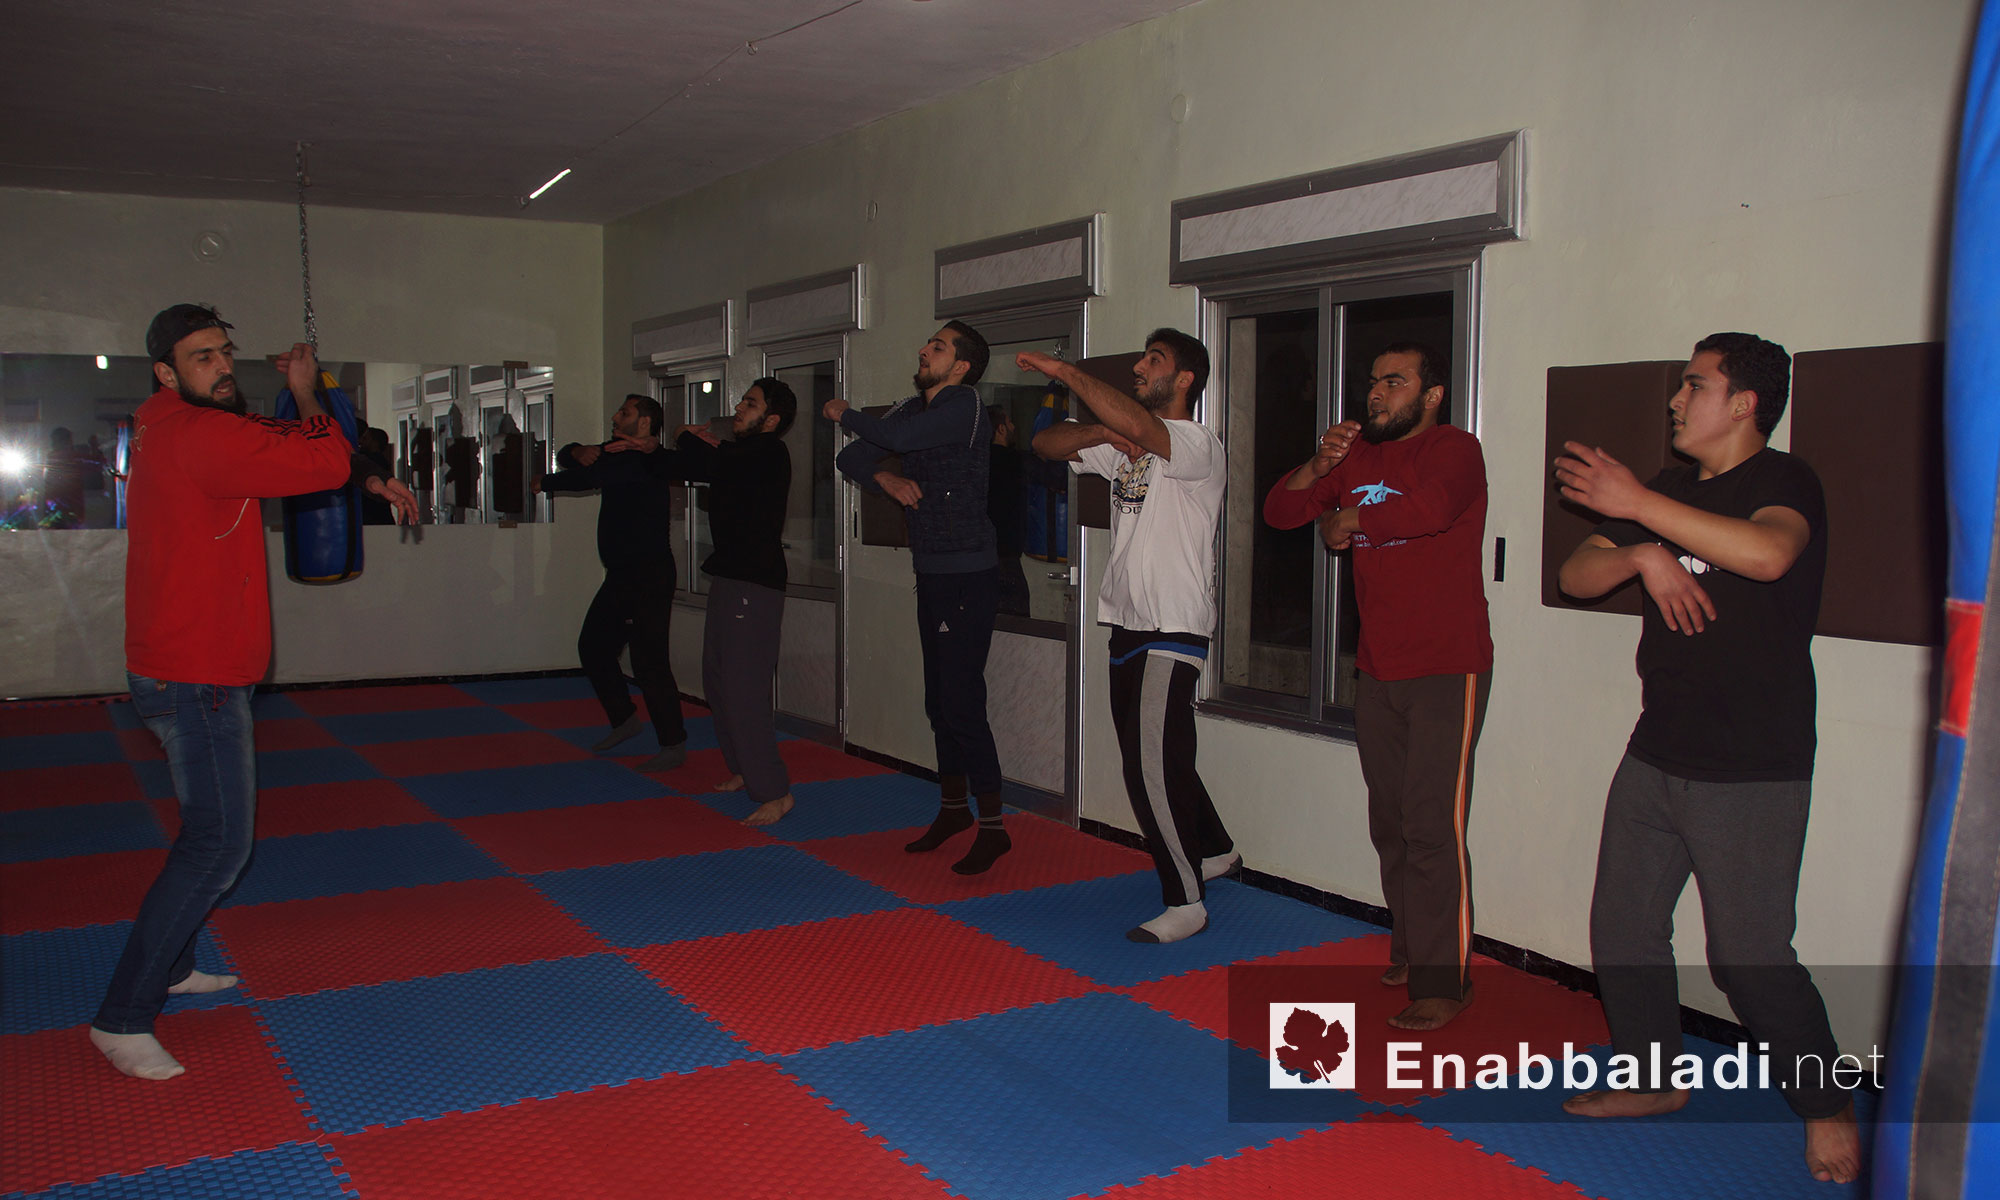 تدريبات على الفنون القتالية ضمن مركز "الشام" في مدينة إدلب - 7 كانون الأول 2017 (عنب بلدي)
